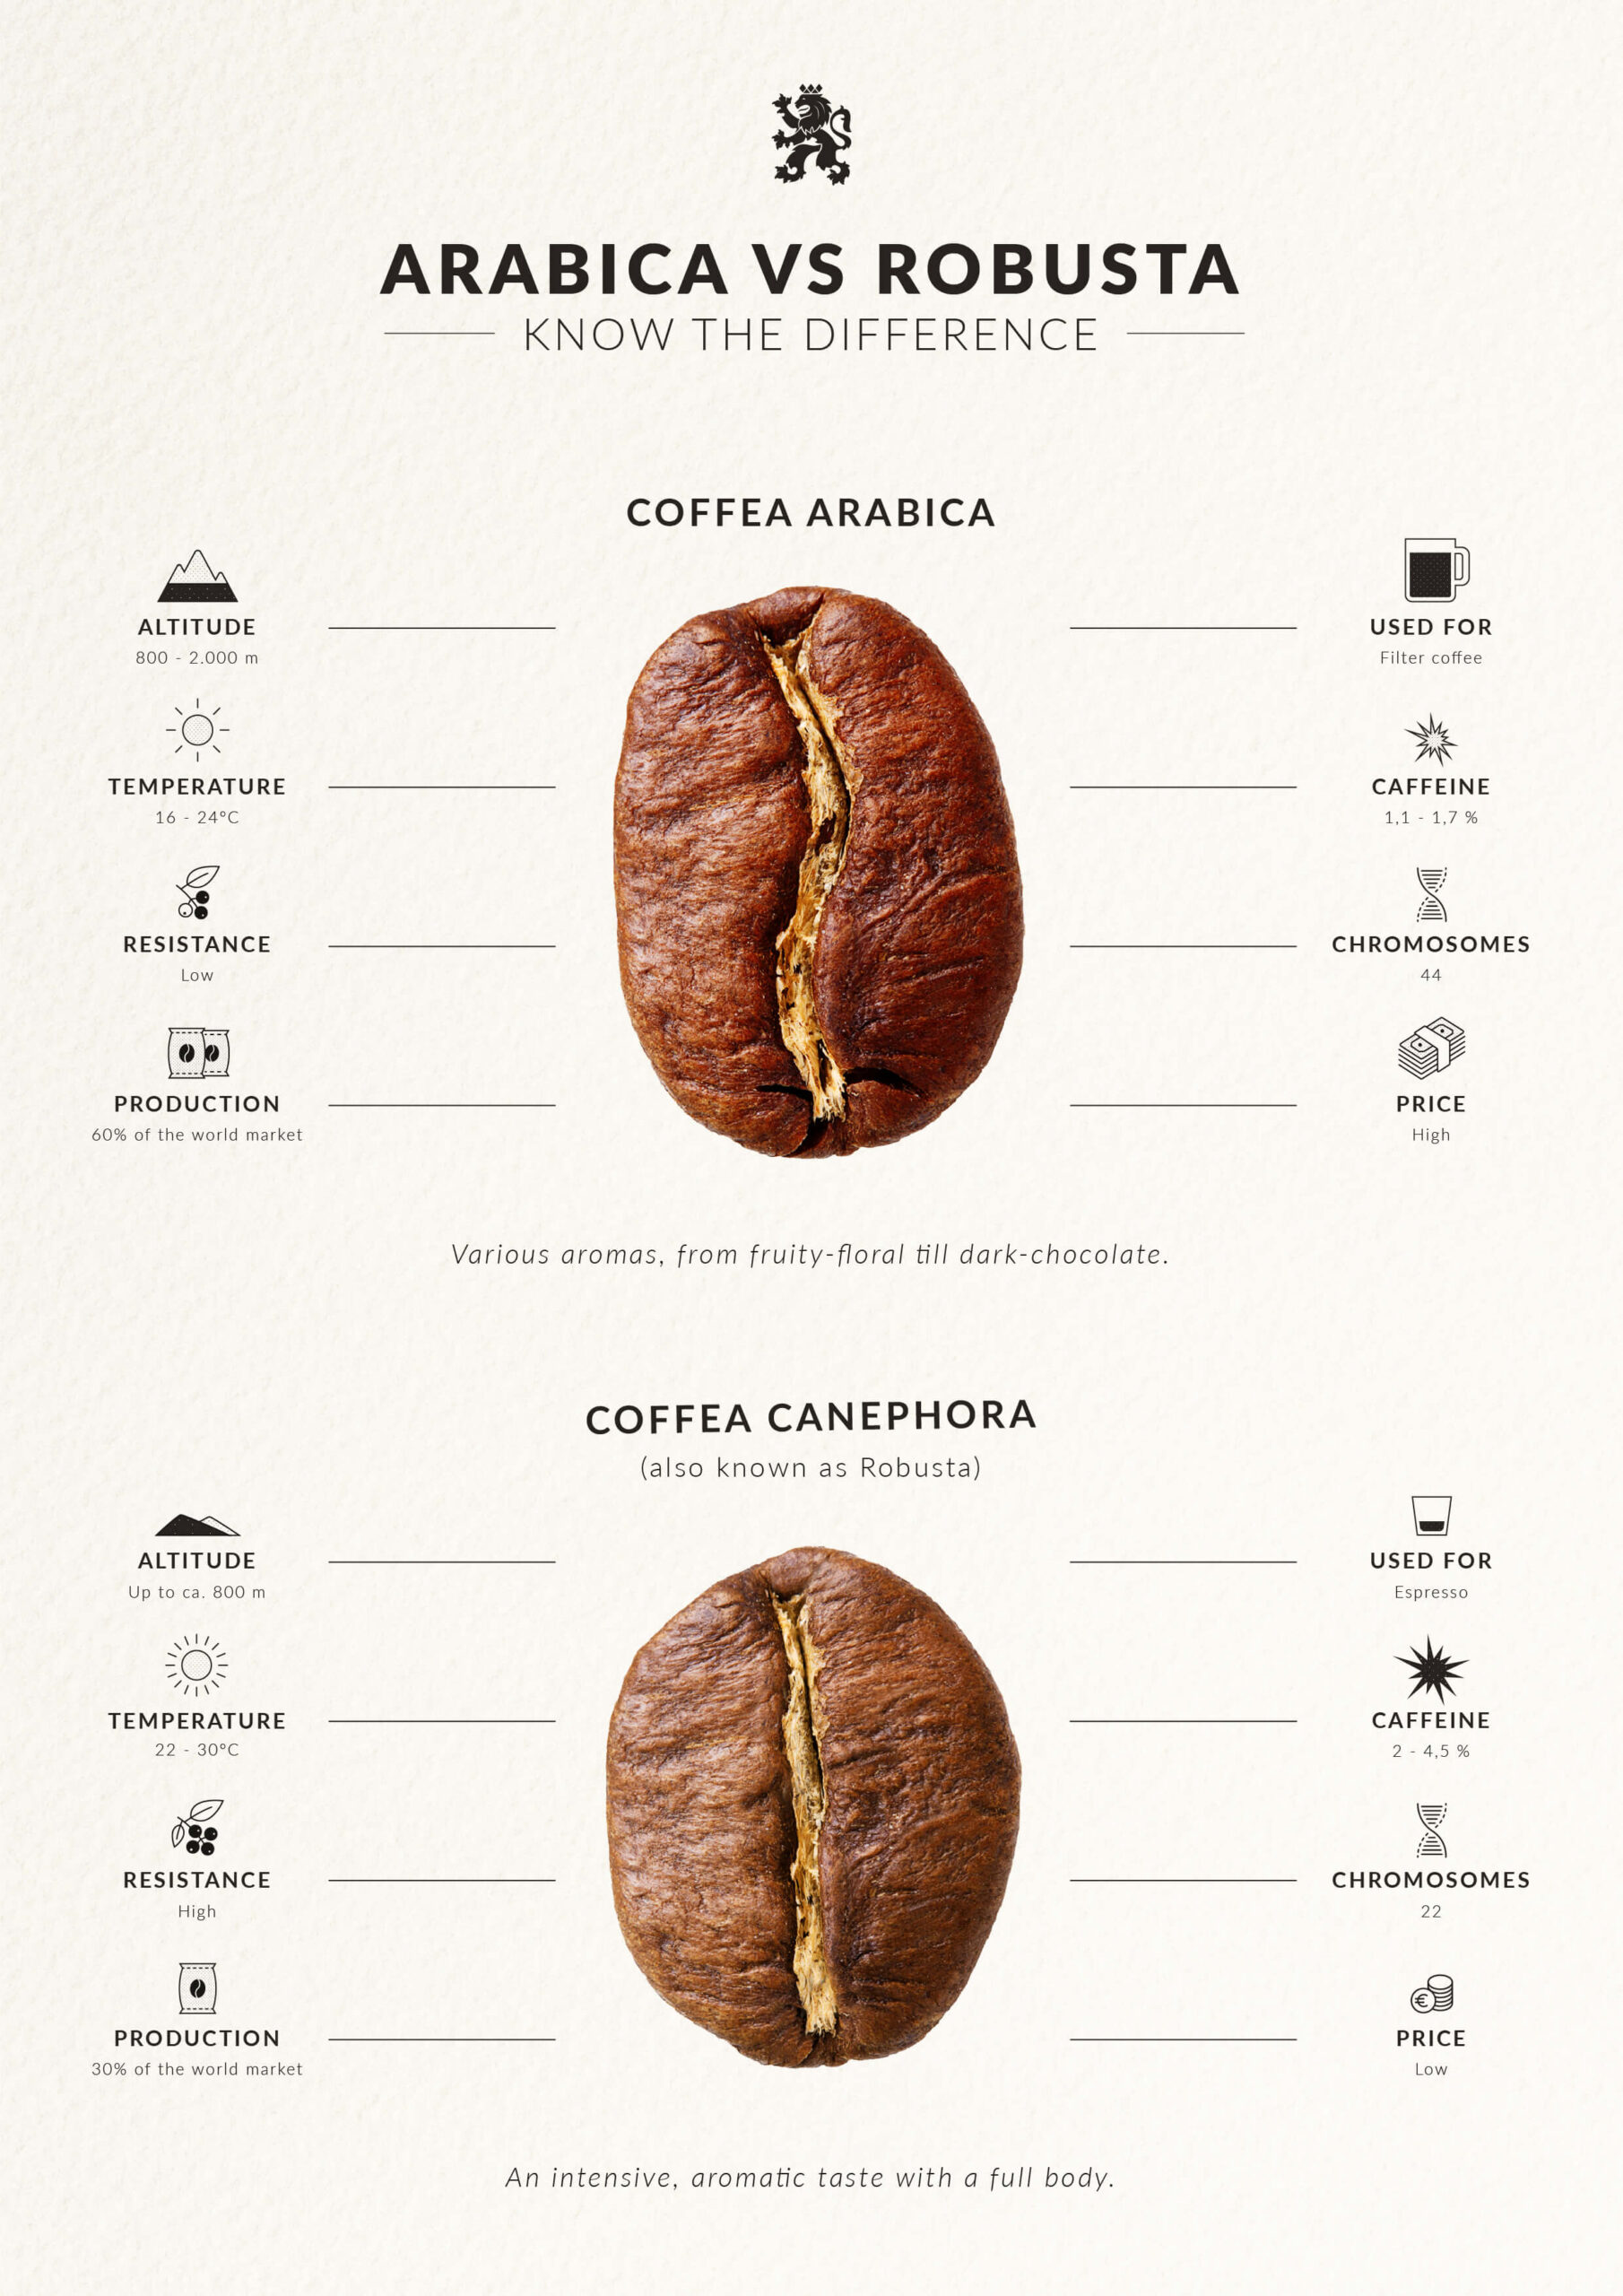 درخت قهوه به نام علمی "Coffea" تولید کننده دانه‌های قهوه است. دو نوع اصلی دانه‌های قهوه که به طور گسترده مصرف می‌شوند